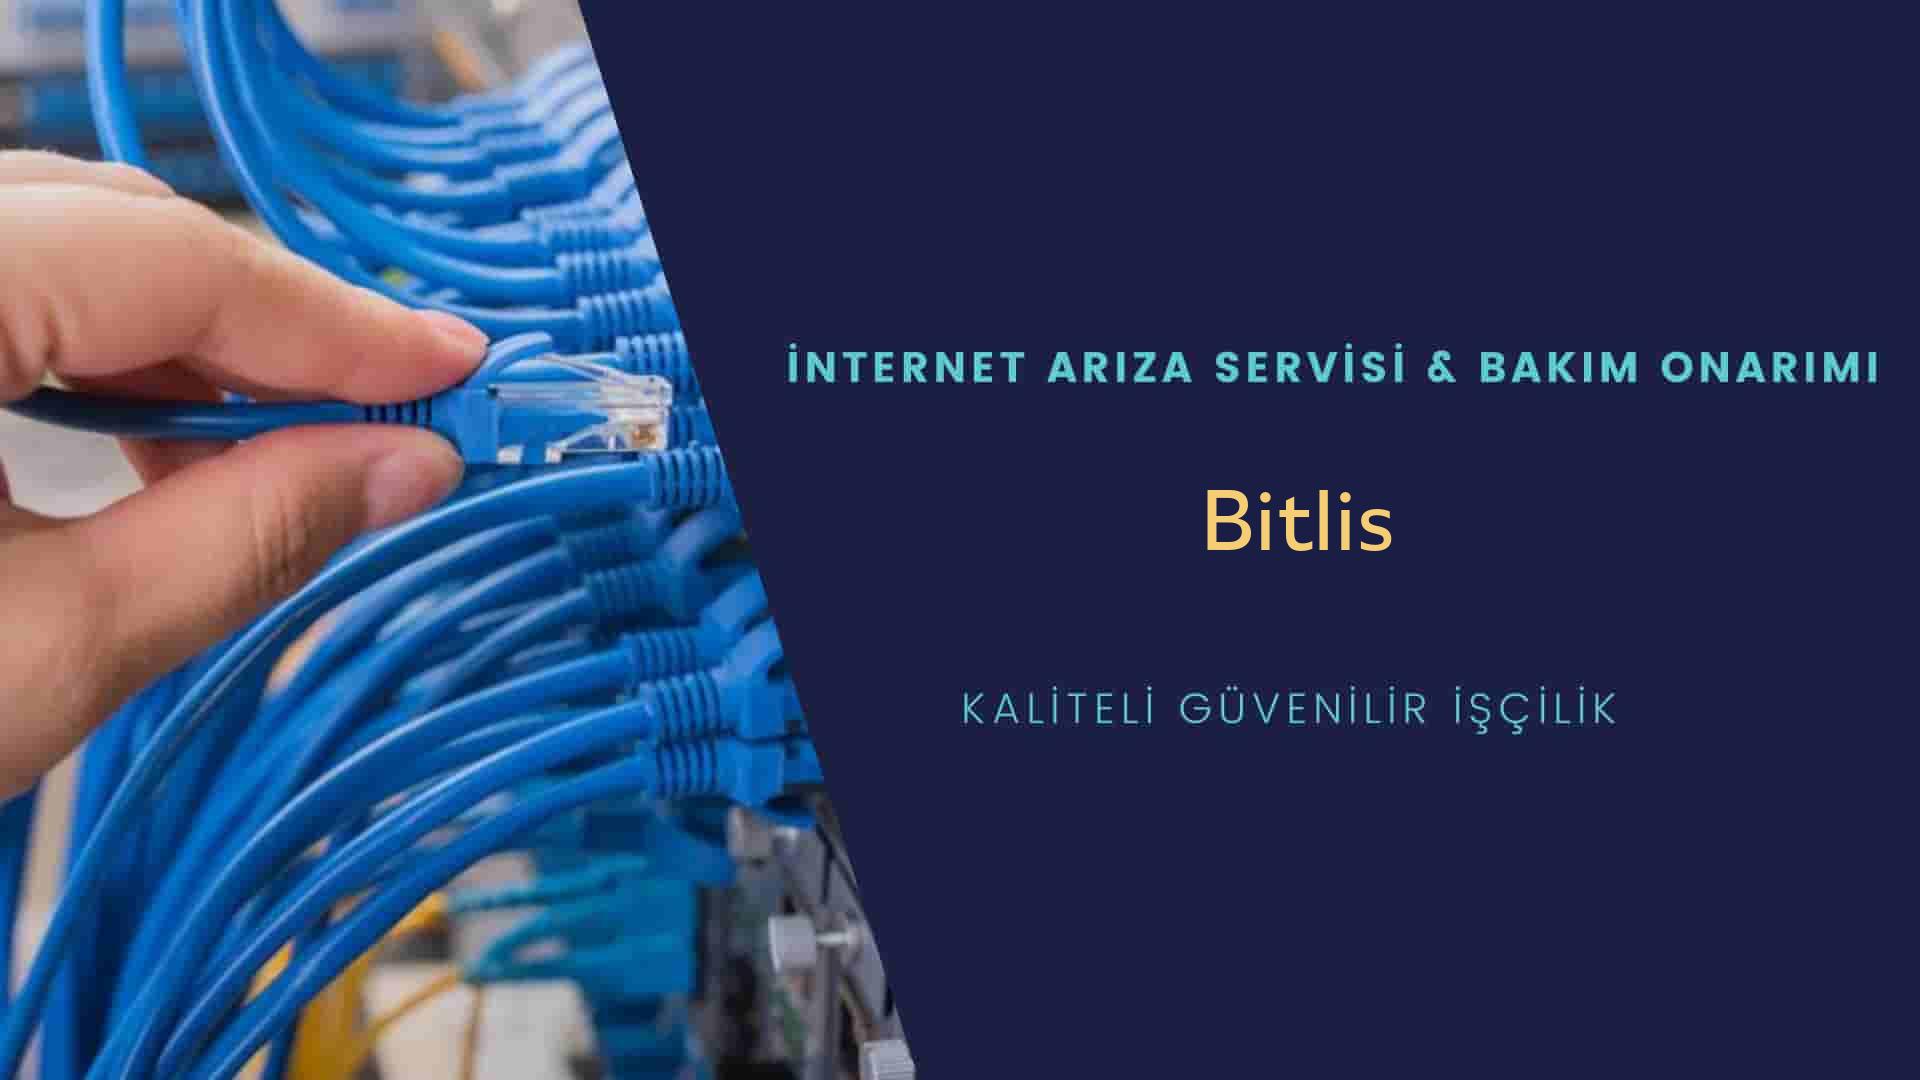 Bitlis internet kablosu çekimi yapan yerler veya elektrikçiler mi? arıyorsunuz doğru yerdesiniz o zaman sizlere 7/24 yardımcı olacak profesyonel ustalarımız bir telefon kadar yakındır size.